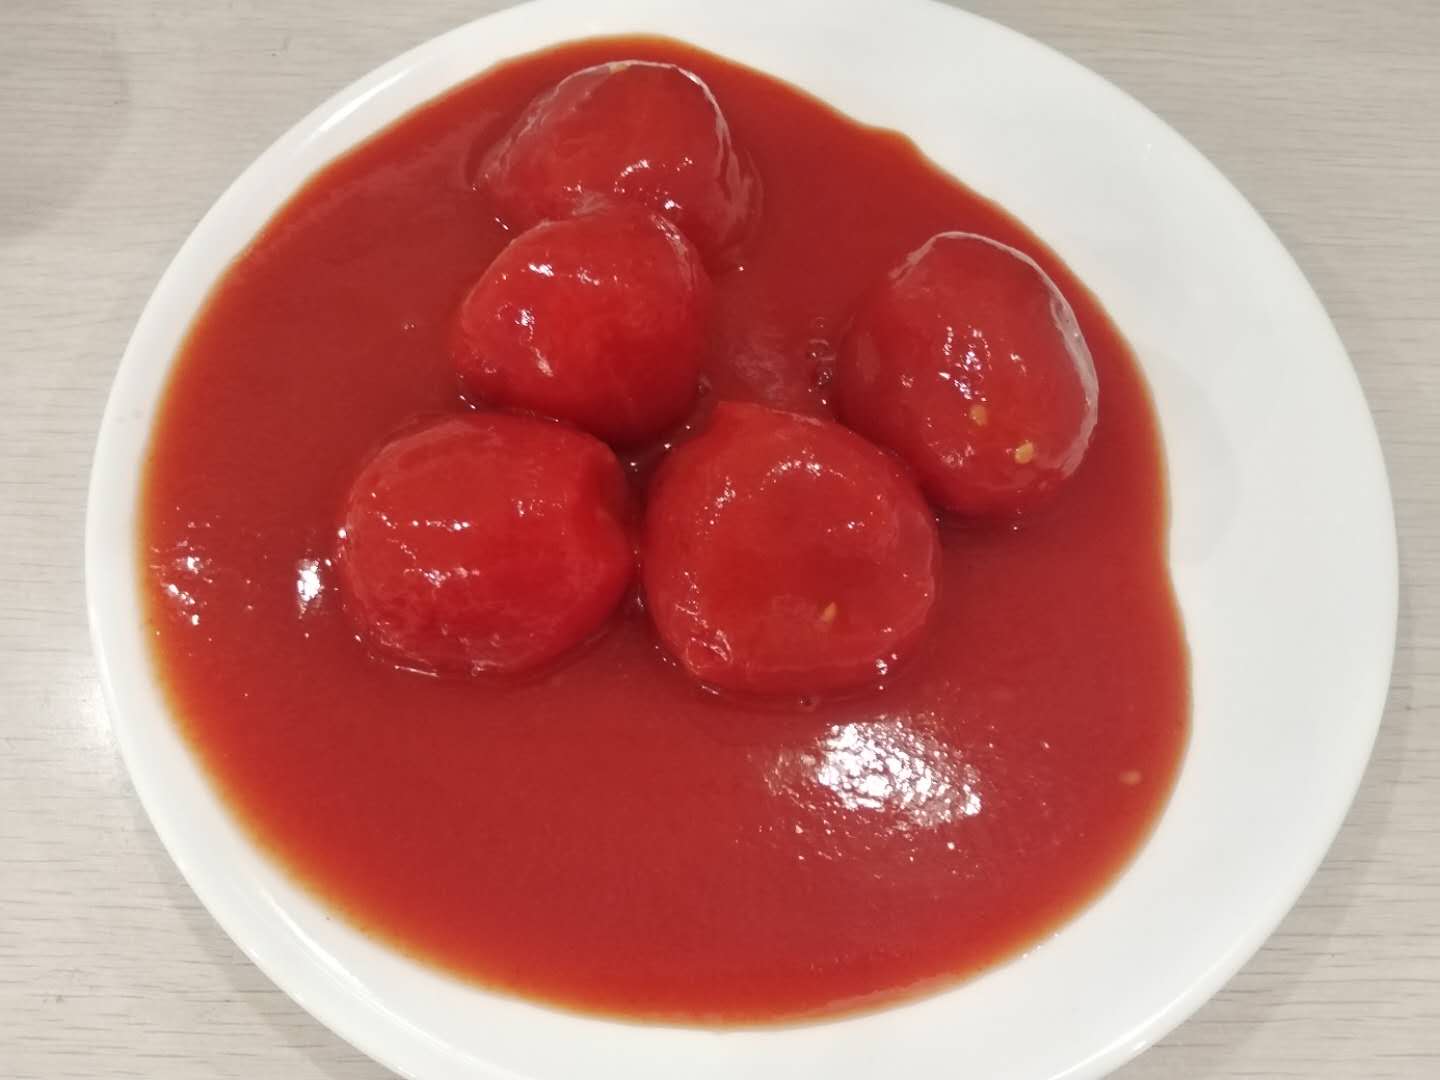 Tomat-tomat kupas utuh dengan jus tomat konsentrasi tinggi